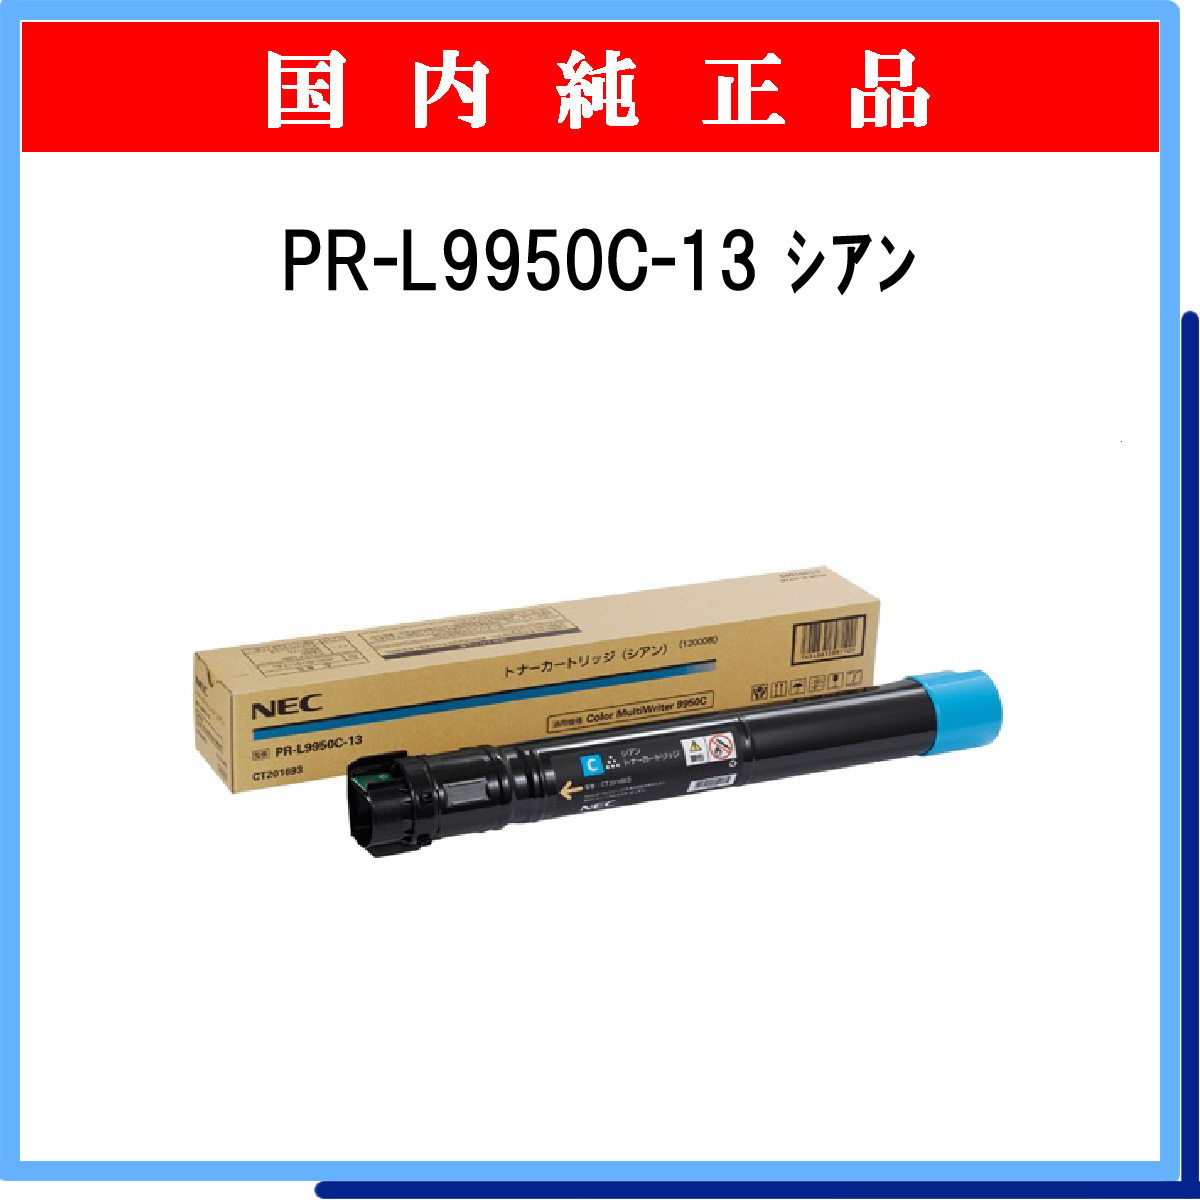 PR-L9950C-13 純正